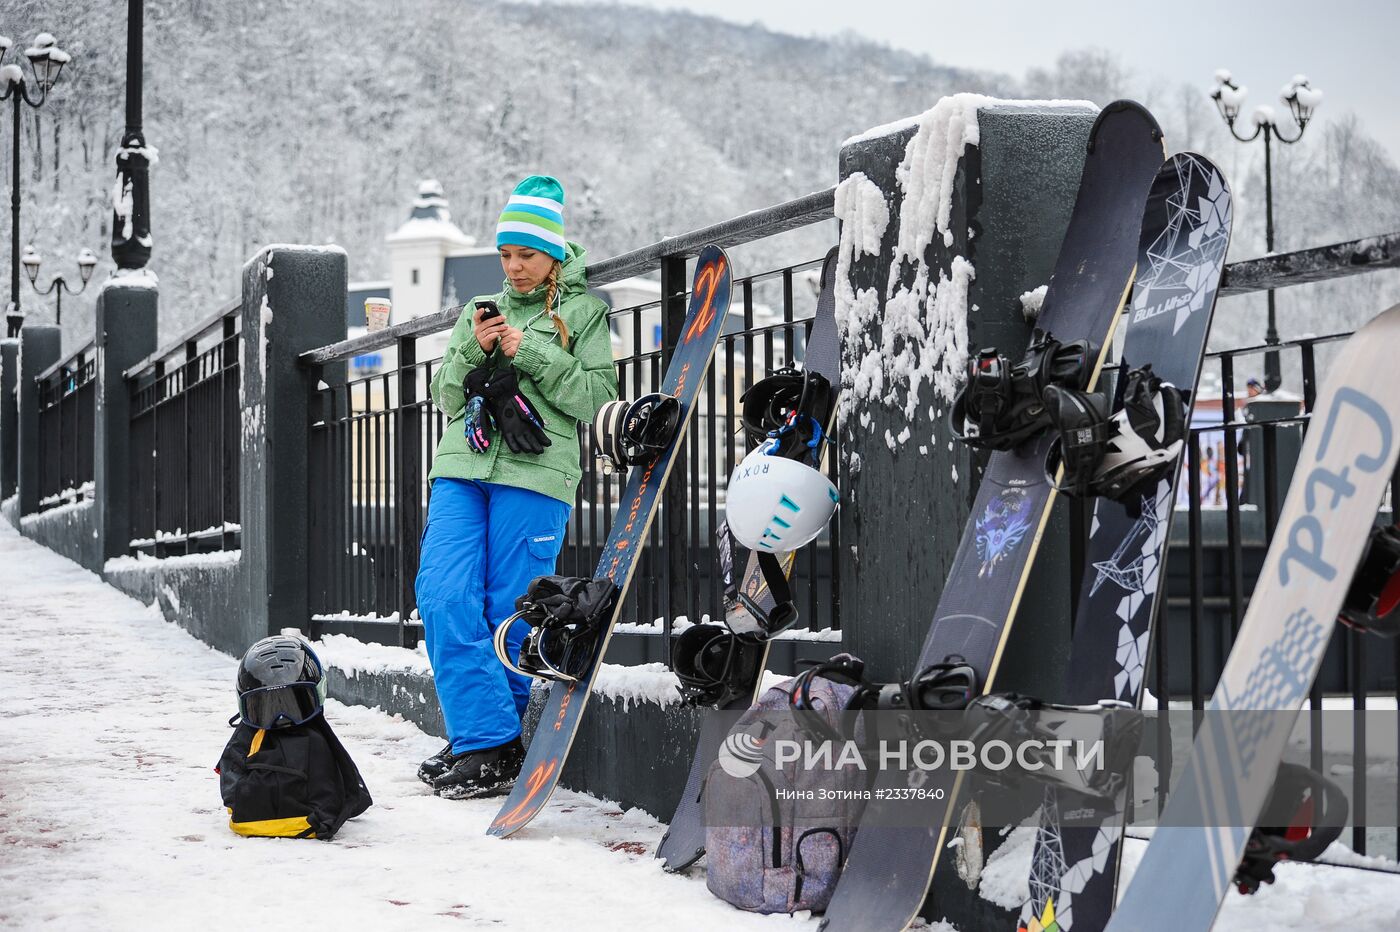 Открытие сезона на горнолыжном комплексе "Роза Хутор"